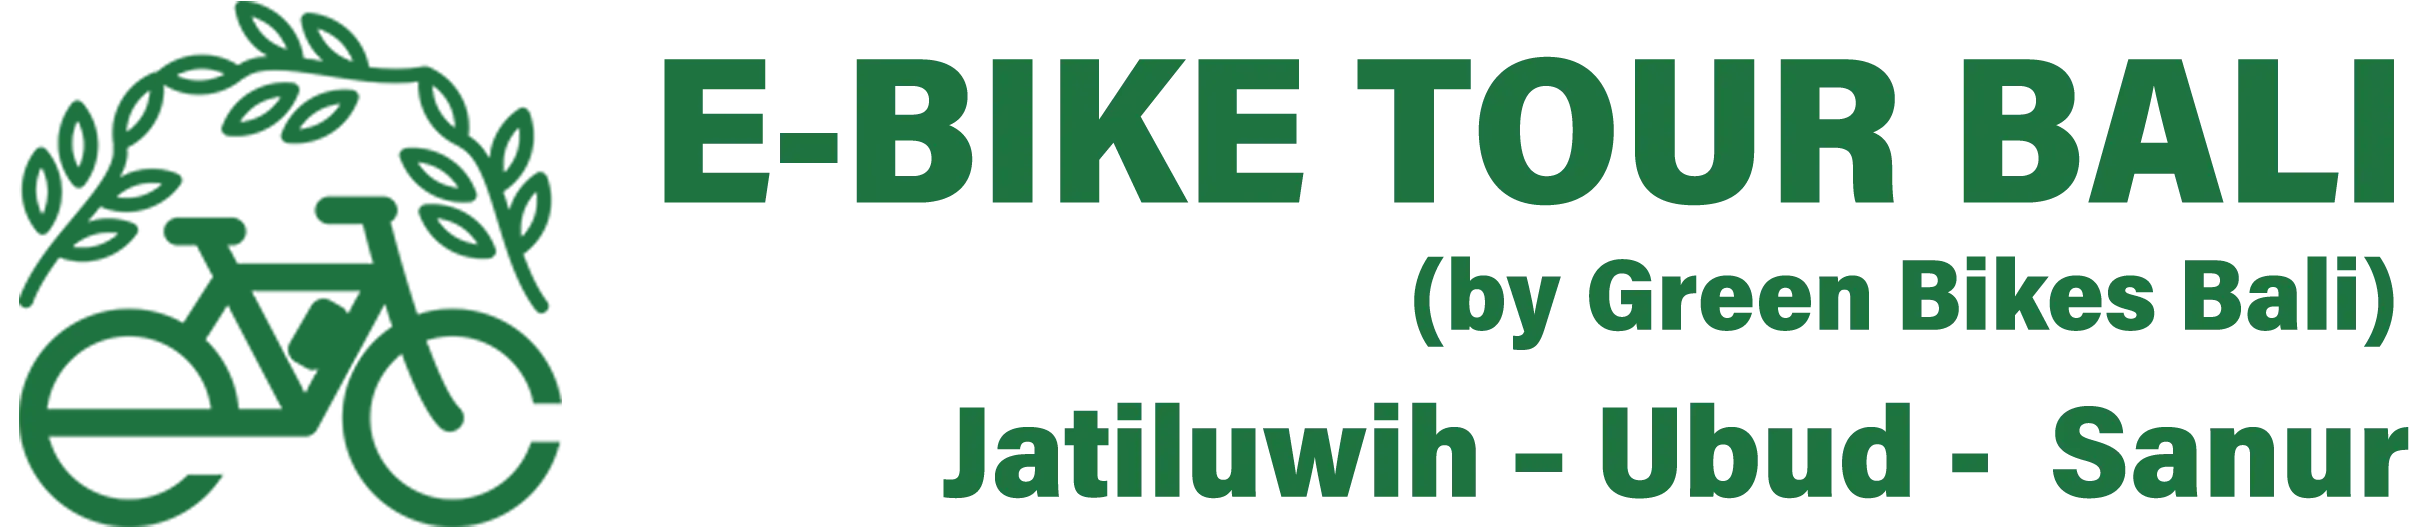 electric bike tour bali